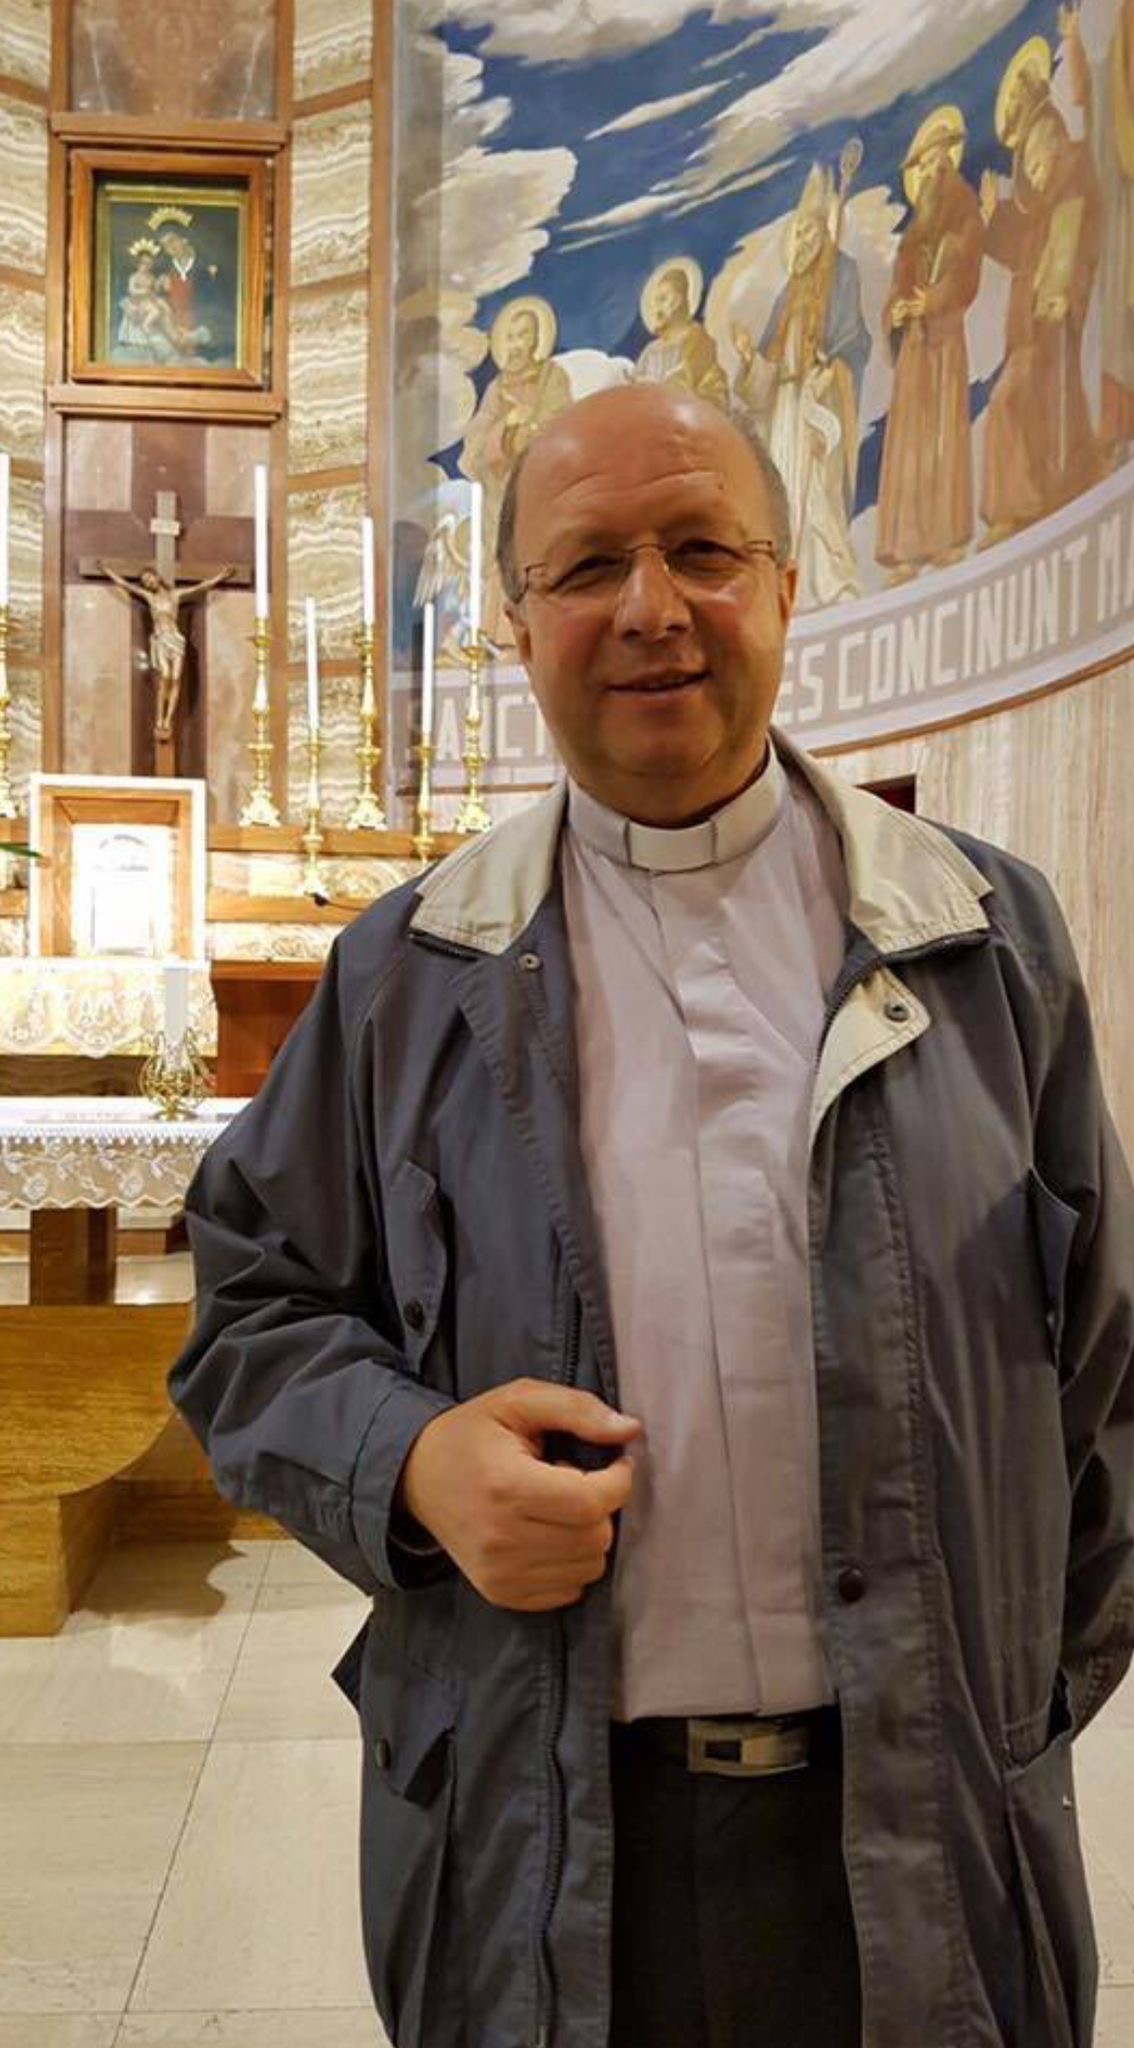 Gli auguri del Sindaco Pisani in occasione del 45esimo anniversario di ordinazione sacerdonale di Don Gianni Citrigno